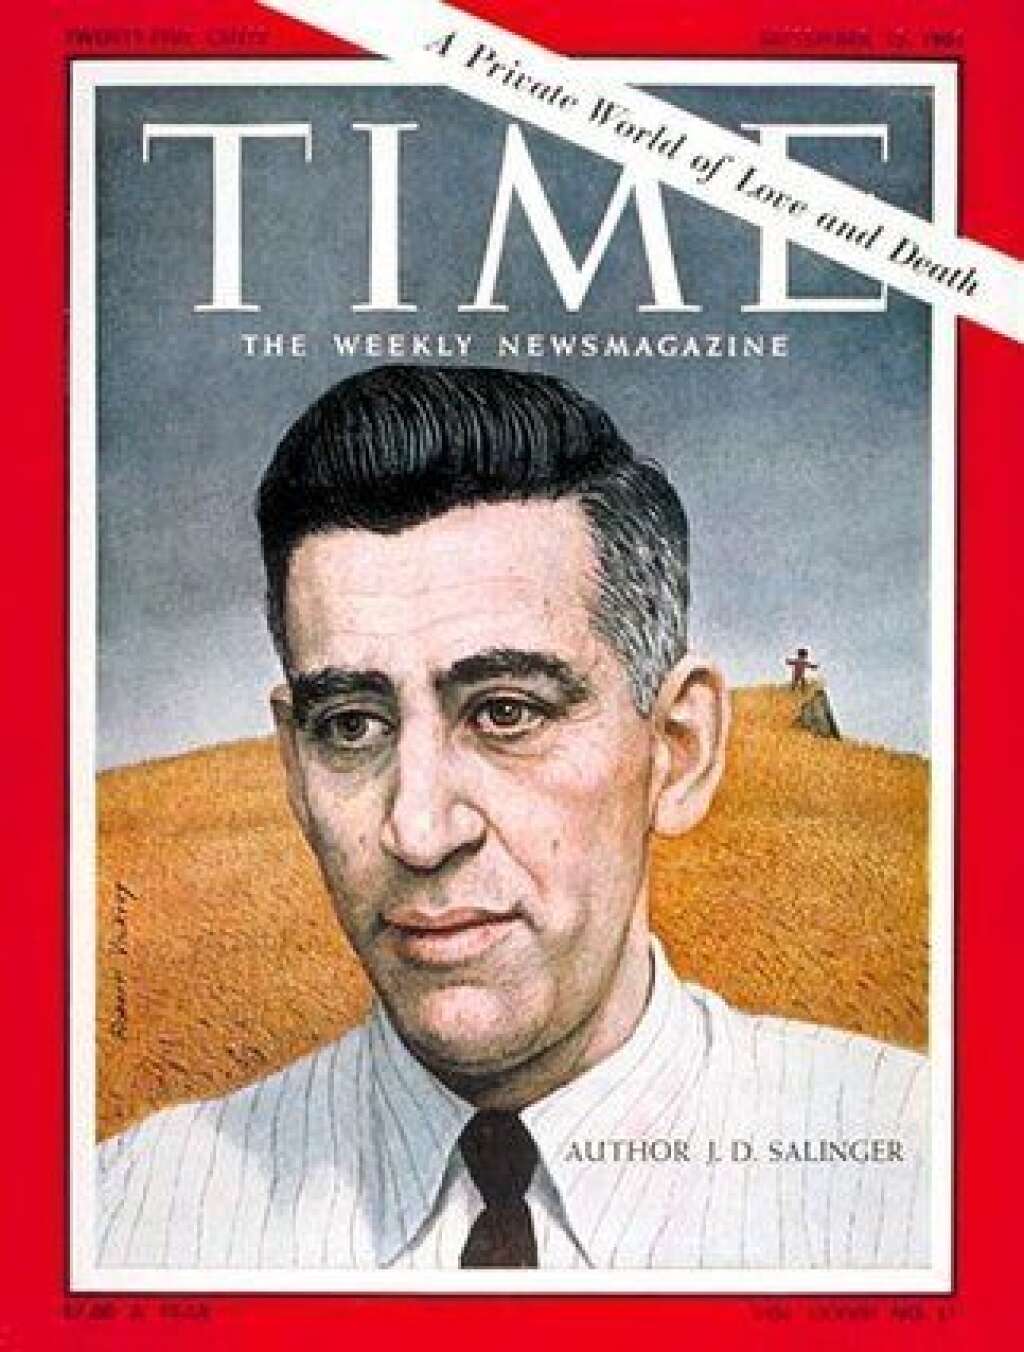 J.D. Salinger - J.D. Salinger et Oona O'Neill se sont peut être aimés mais "ils ne se marièrent jamais et n’eurent aucun enfant". Frédéric Beigbeder s'inspire de "l'idylle adolescente" entre l'écrivain débutant et la fille du grand dramaturge américain Eugene O'Neill pour disserter sur sa propre relation avec le sexe opposé.